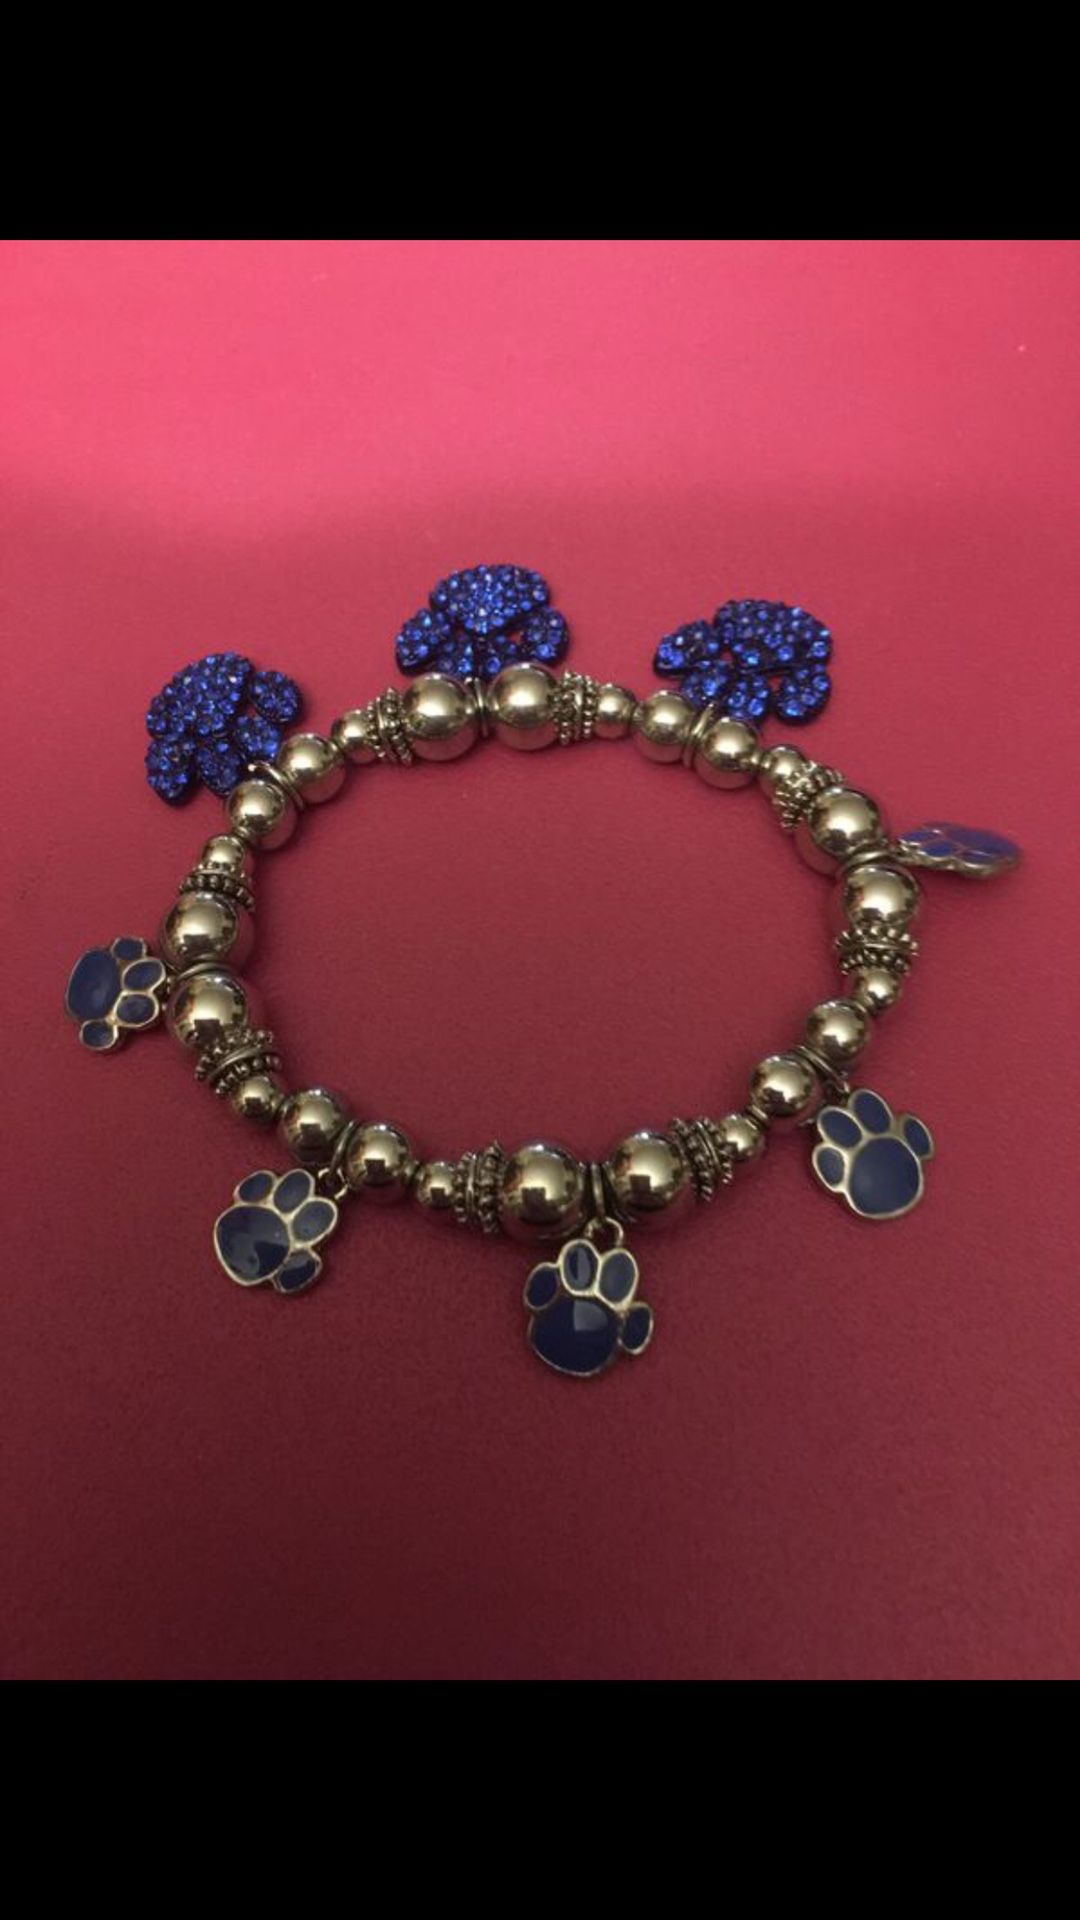 Fur Mom - Dog Cat Paws Silver Beads CHARM Bracelet Jewelry